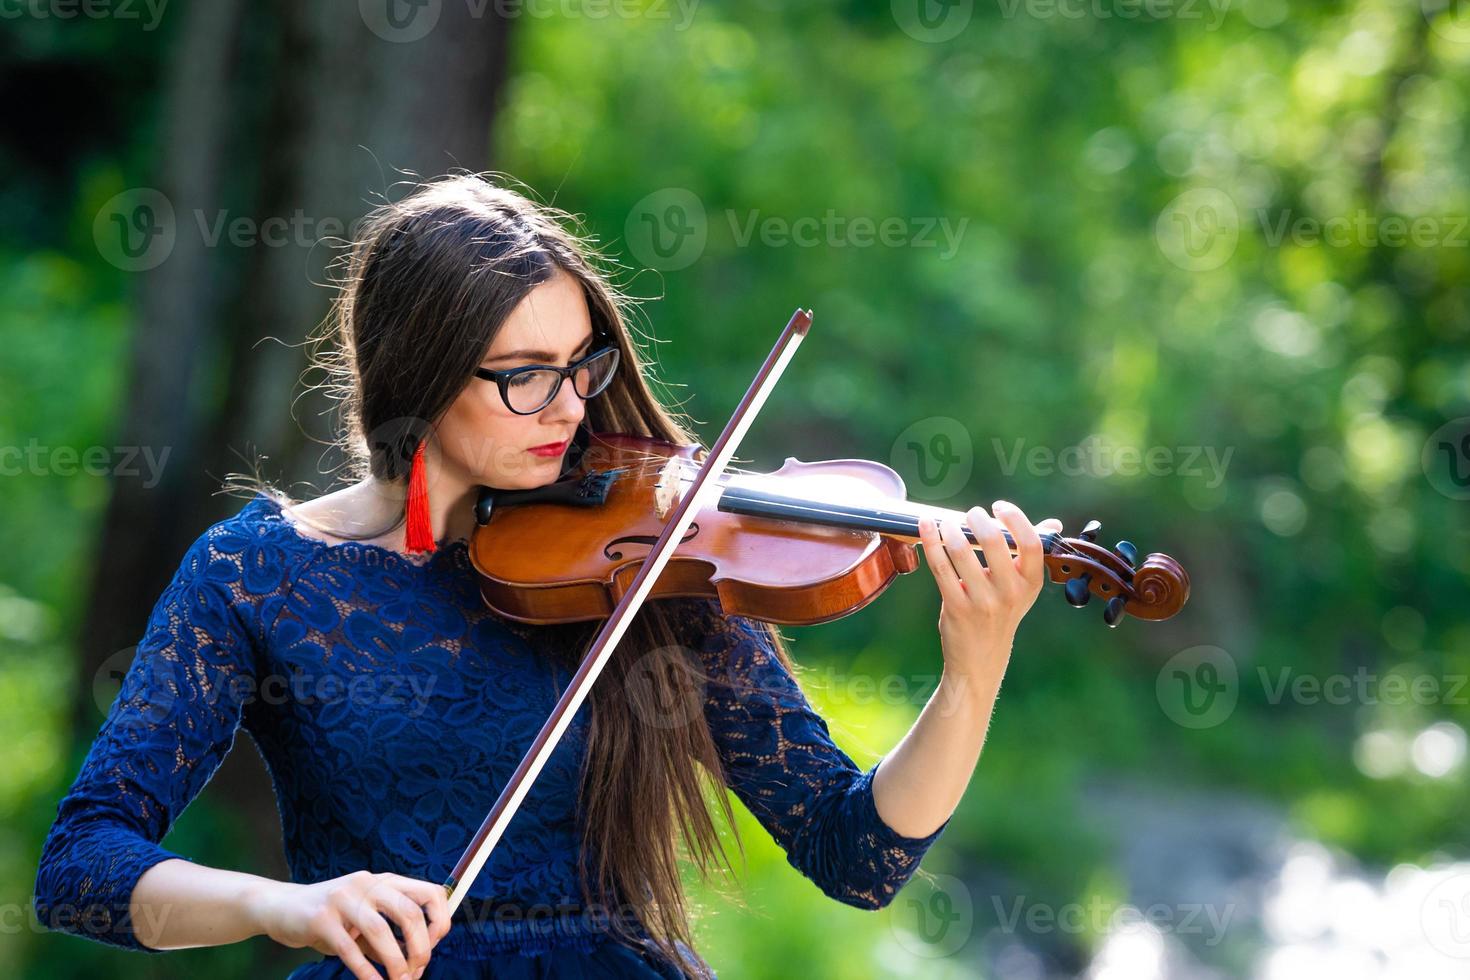 jovem tocando violino no parque. profundidade de campo rasa - imagem foto